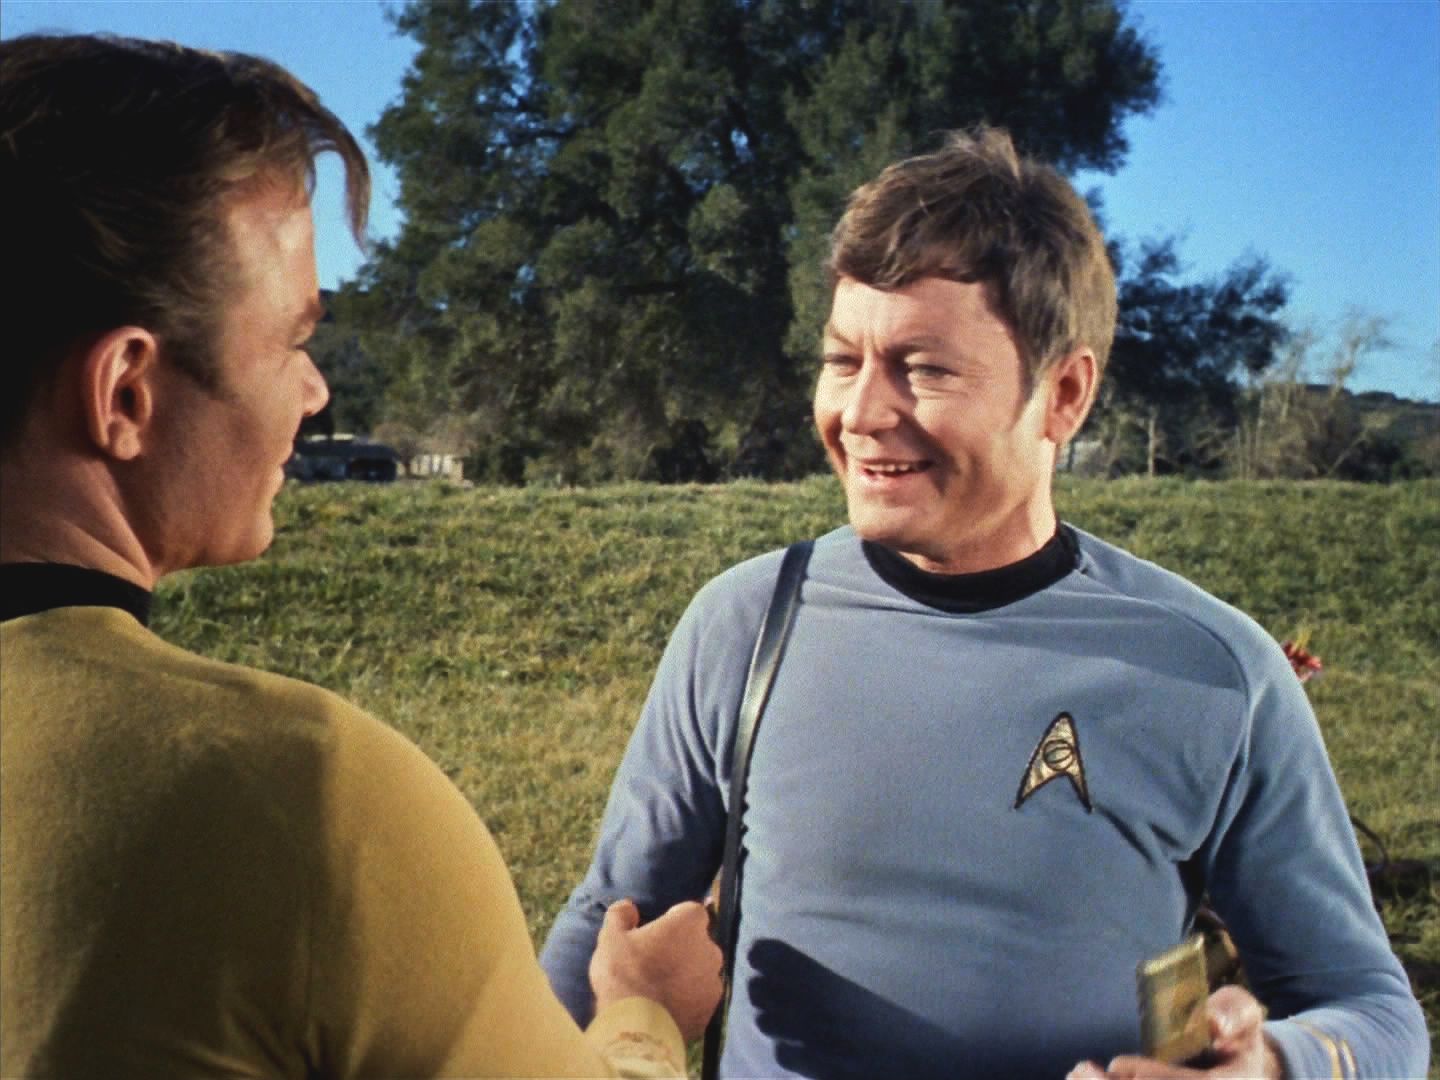 Sandoval opakovaně odmítá evakuaci kolonie, a než se kapitán Kirk zorientuje, jsou také všichni členové výsadku infikováni sporami.